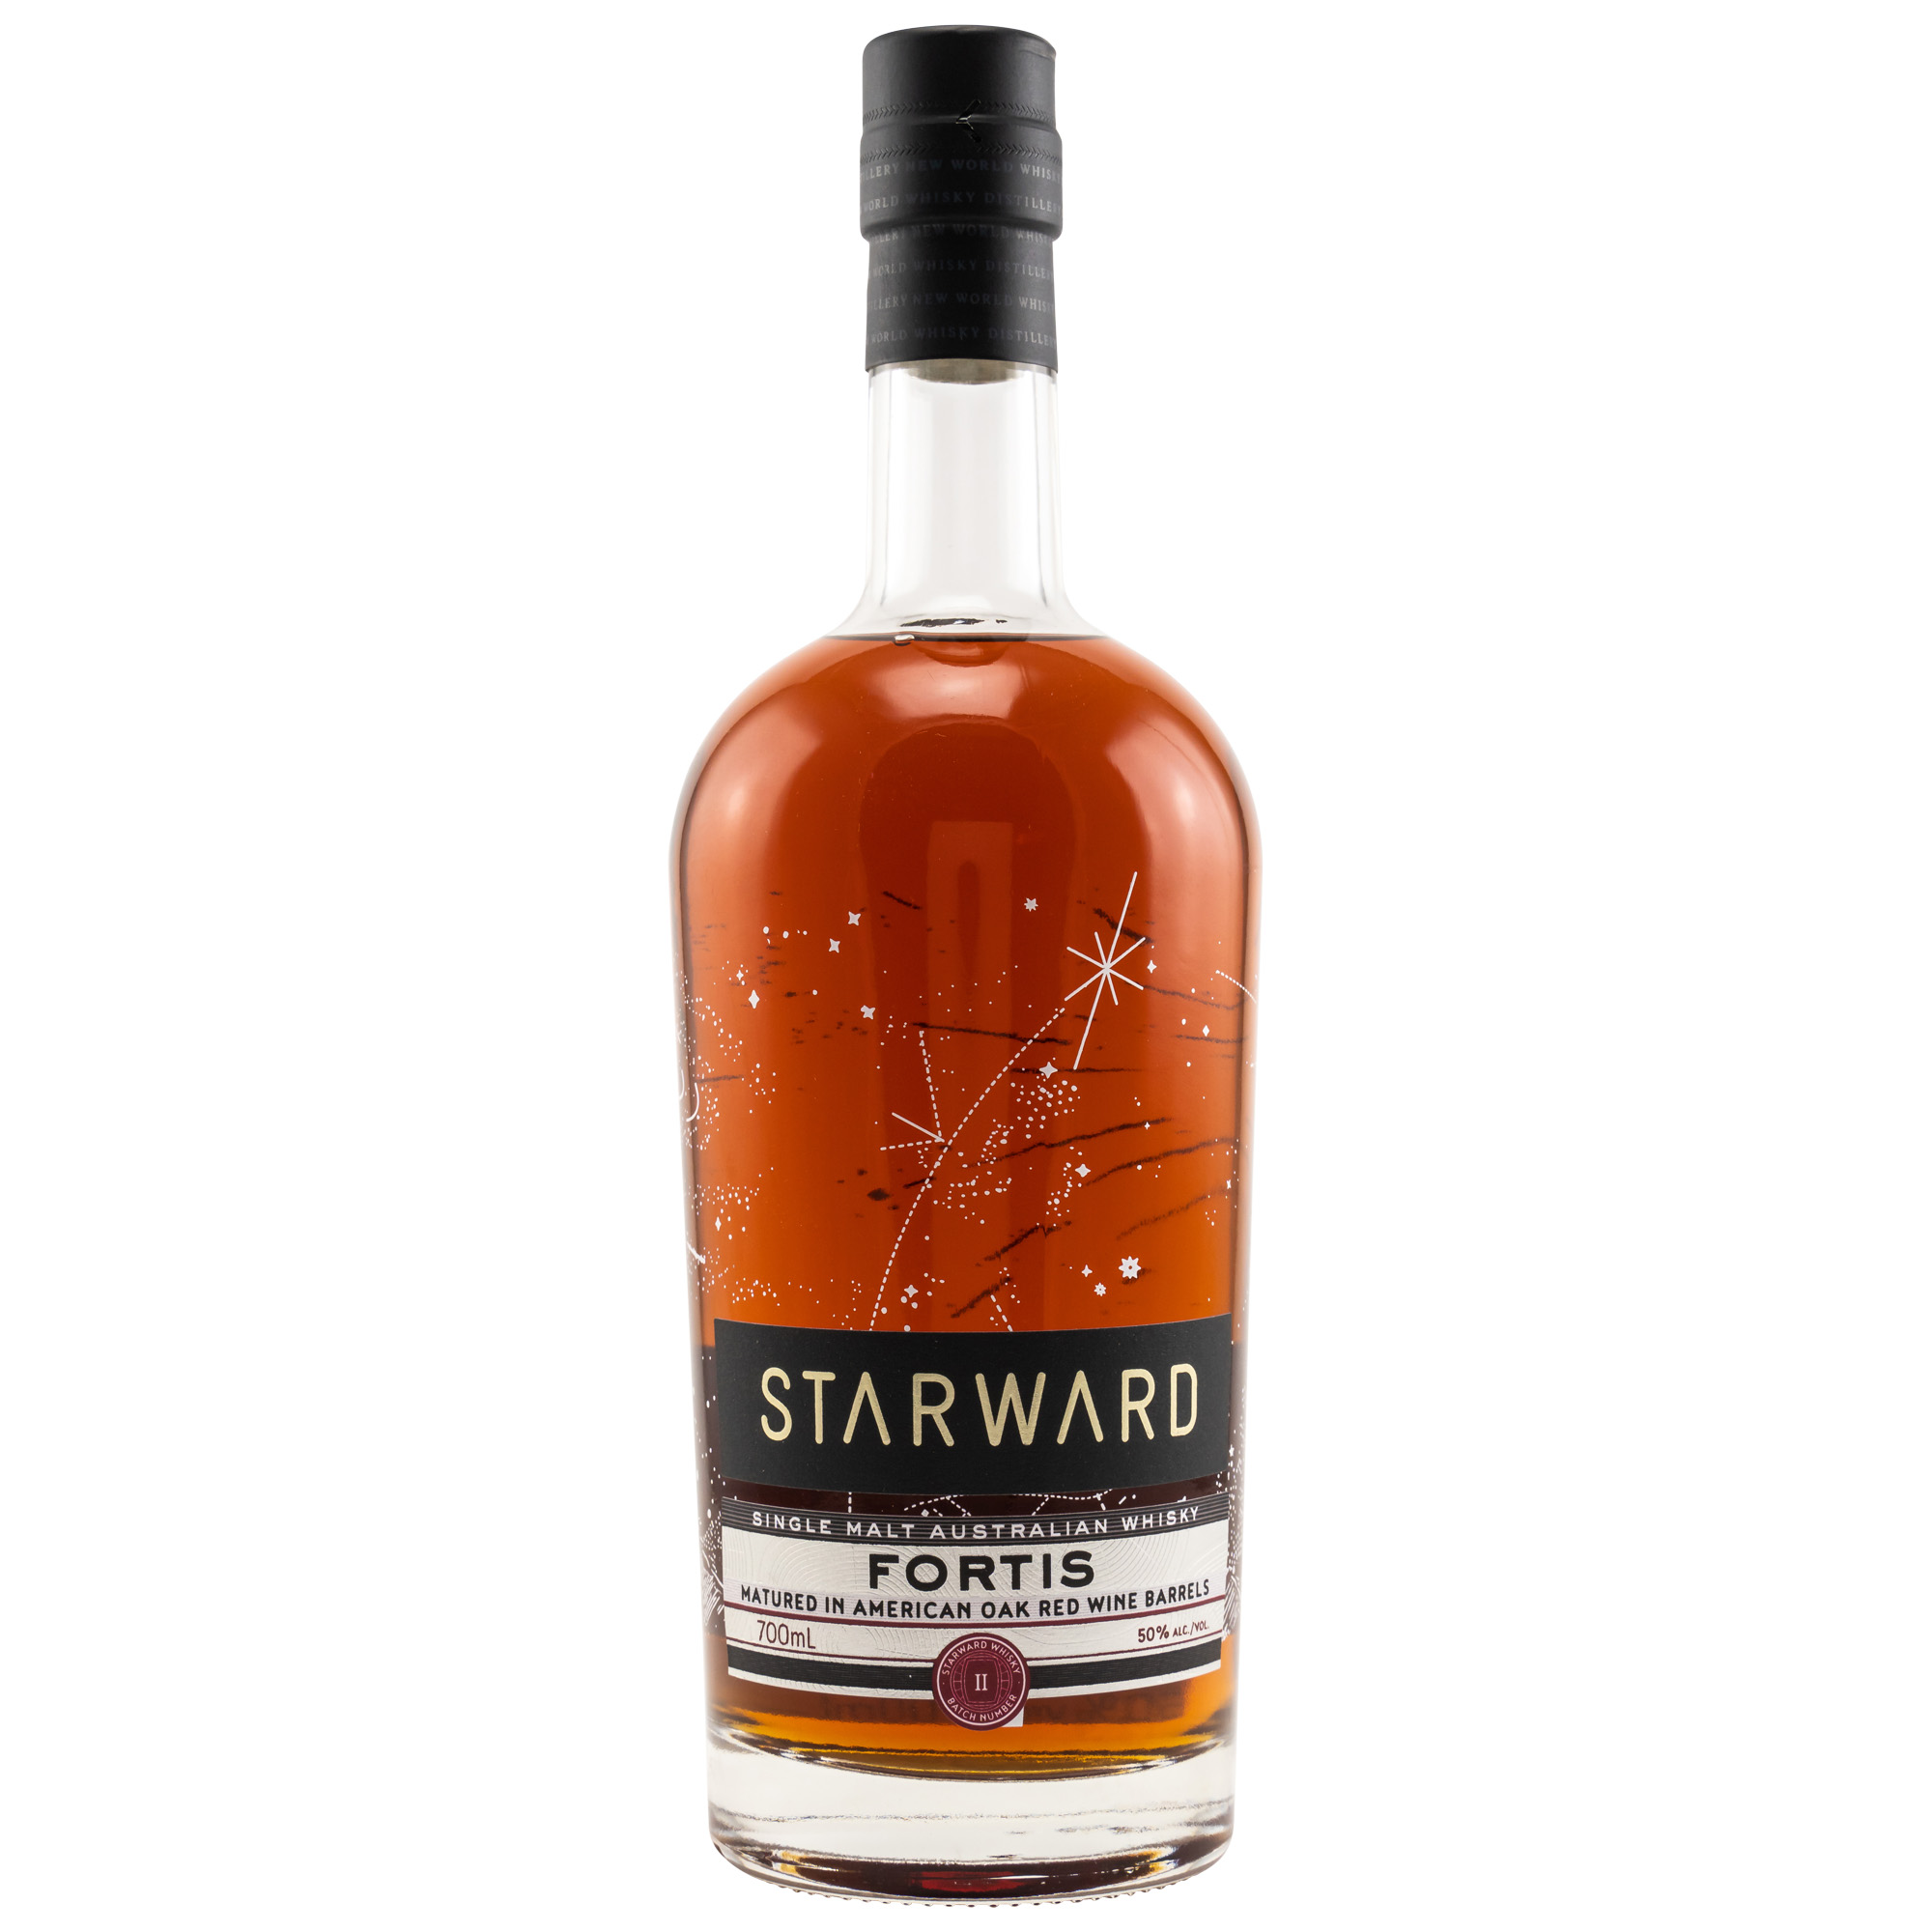 Starward - Whisky aus Down Under